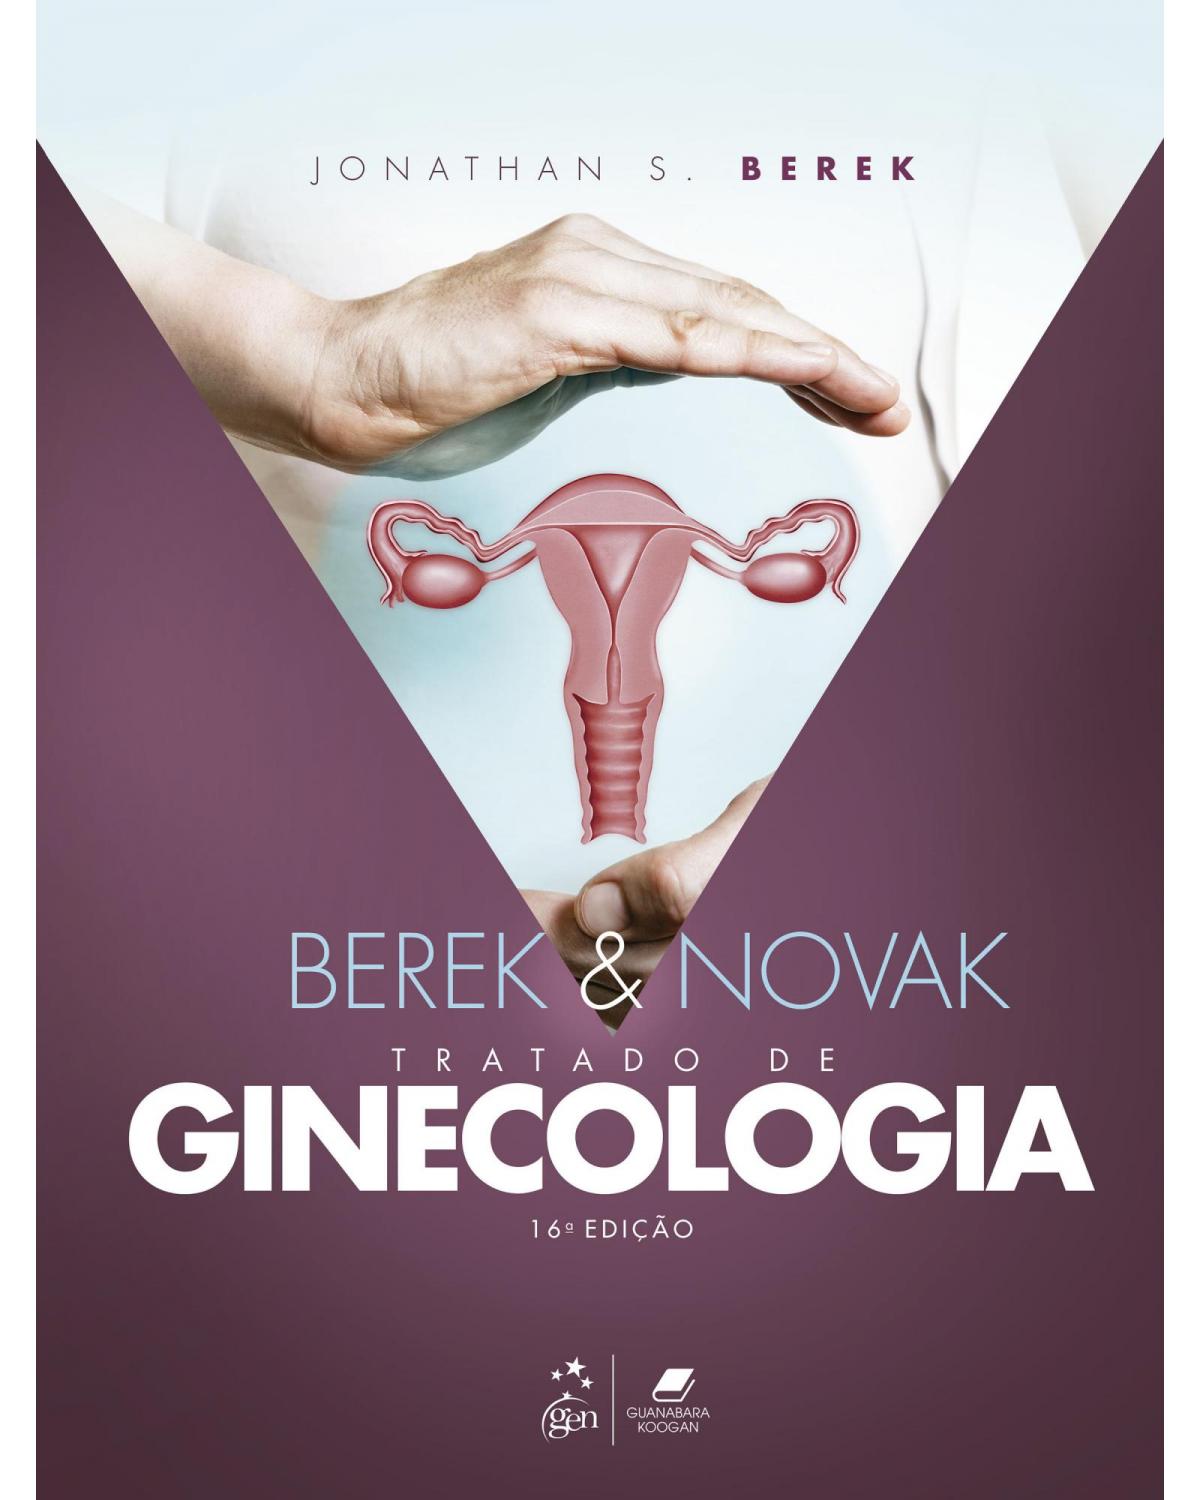 Berek & Novak - Tratado de ginecologia - 16ª Edição | 2021